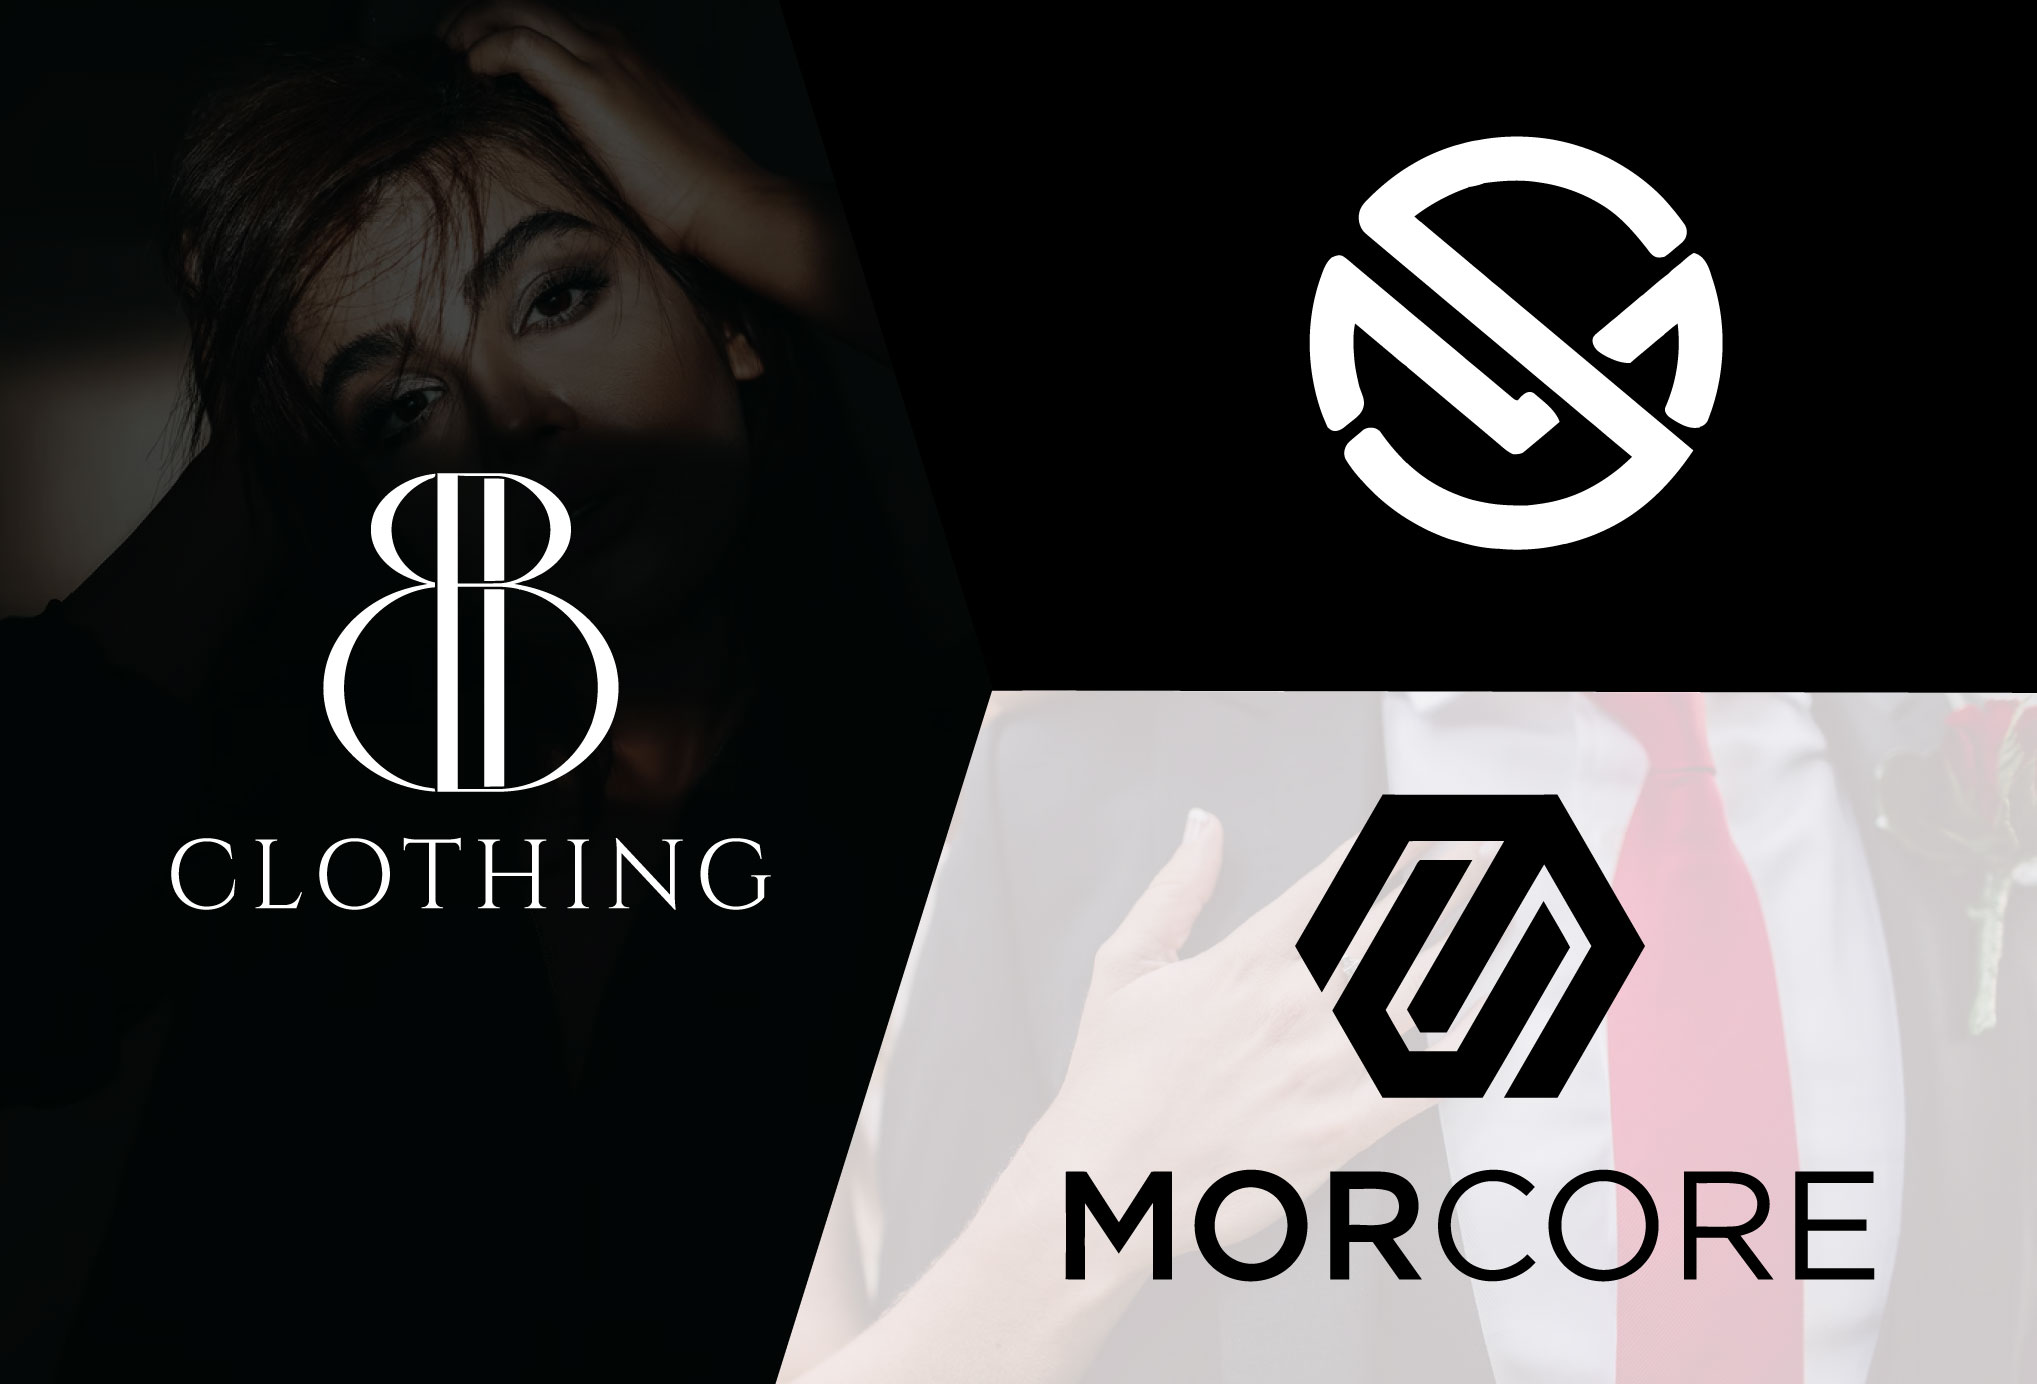 I will do modern clothing, clothing brand, monogram logo design for $50 ...